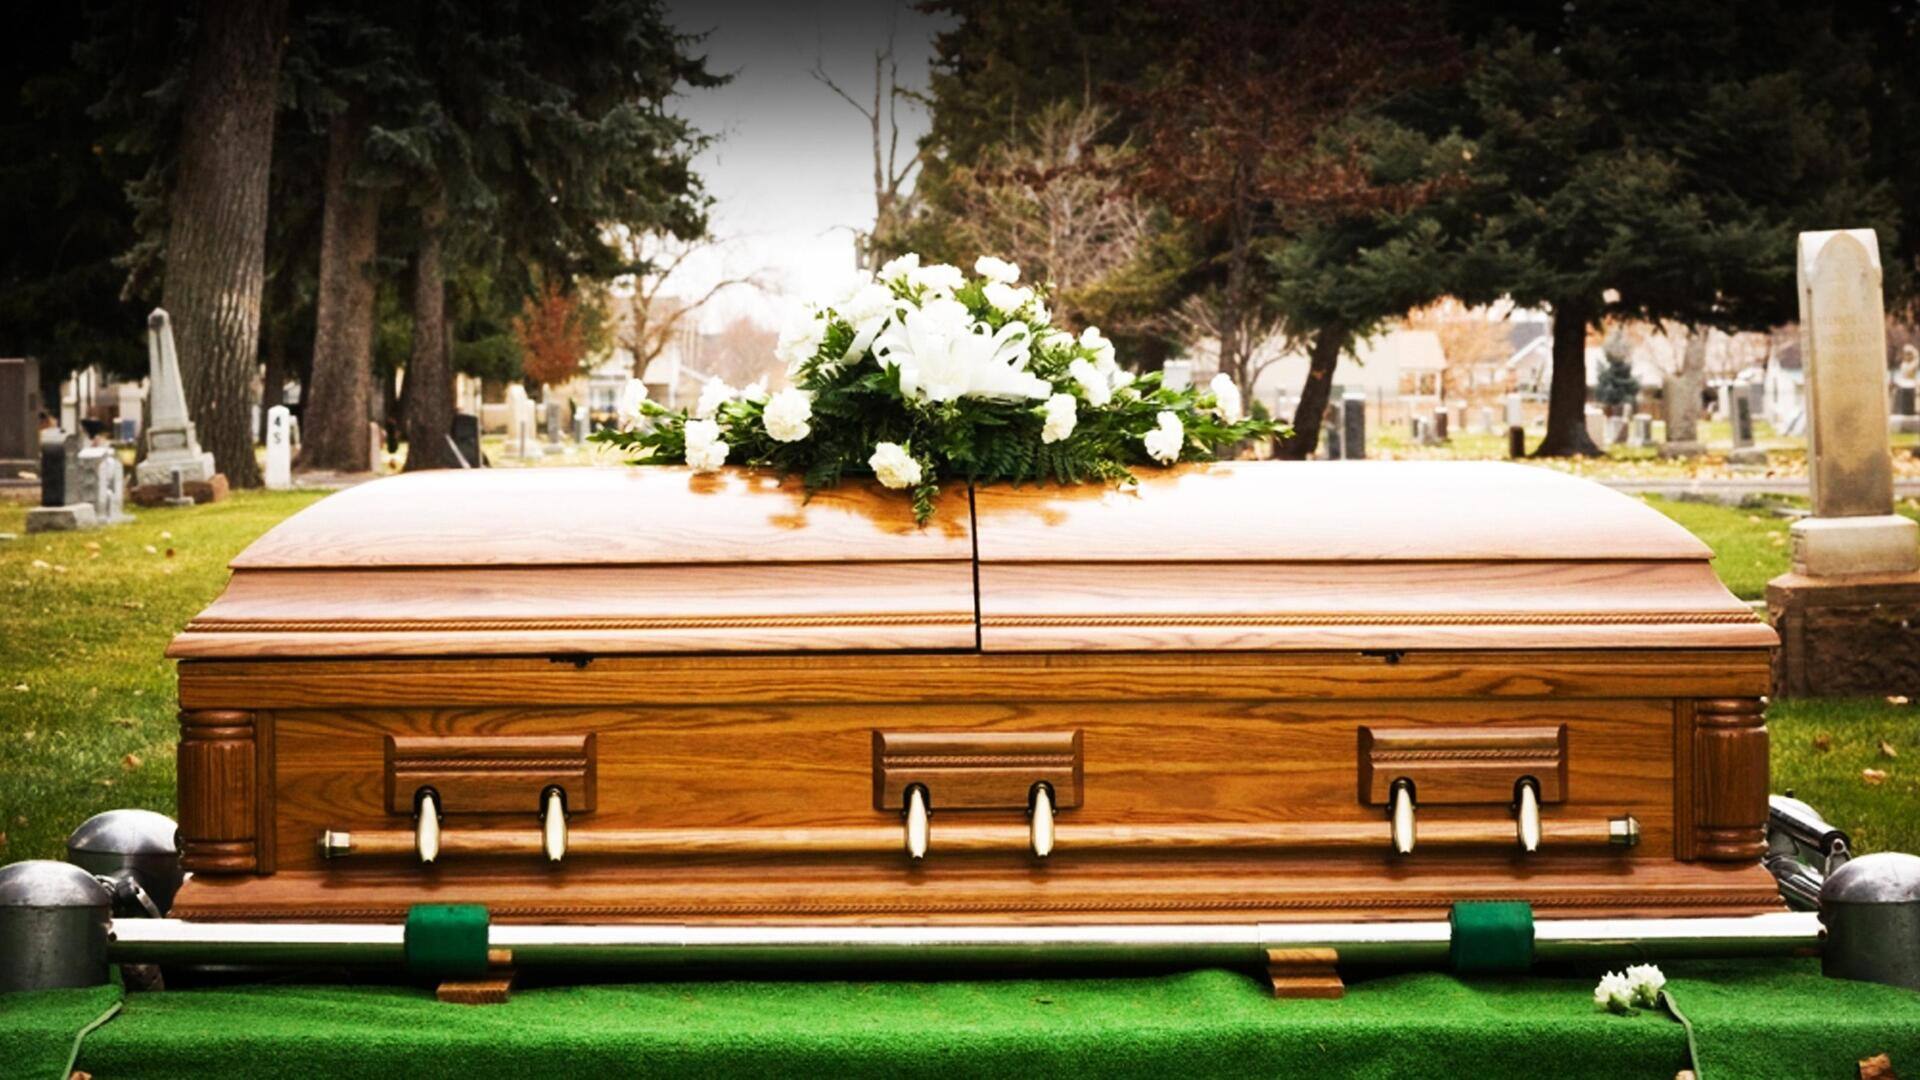 अमेरिका: अंतिम संस्कार में ताबूत के अंदर सांस लेती मिली 'मृत' बुजुर्ग महिला, जानिए पूरा मामला